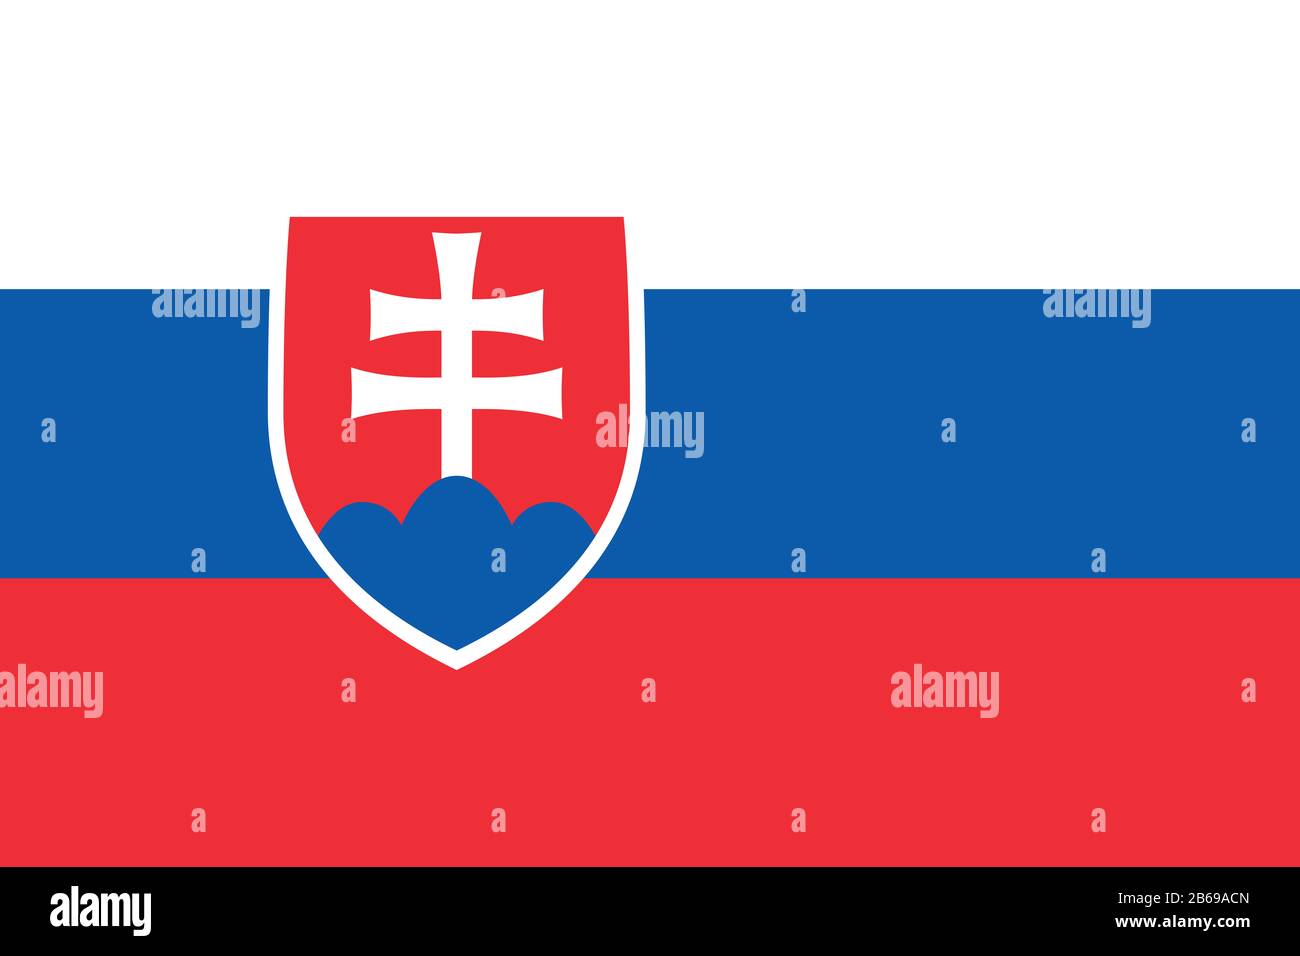 Flagge der Slowakei - Standardverhältnis der slowakischen Flagge - True RGB-Farbmodus Stockfoto